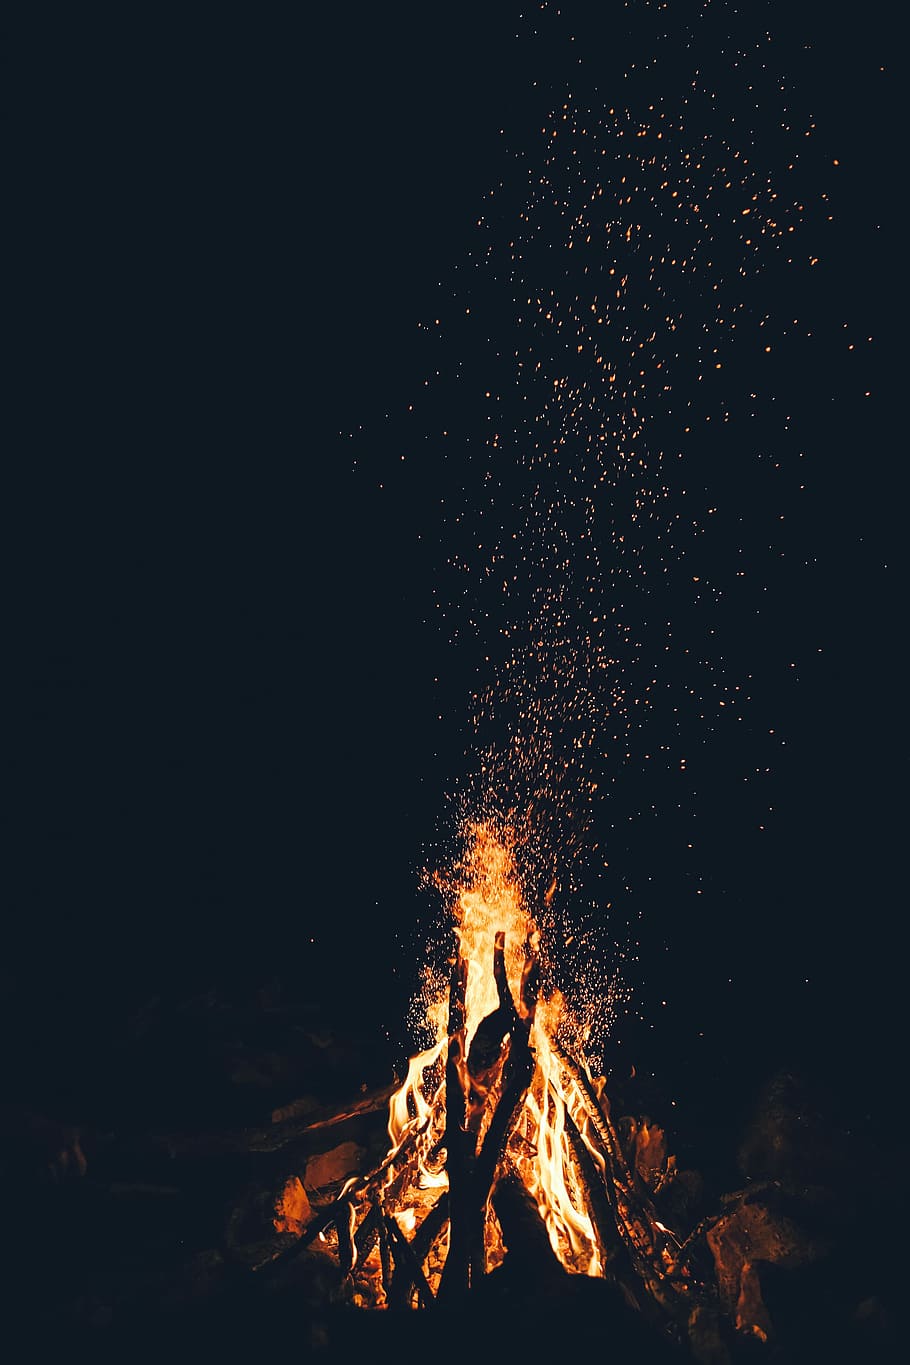 Free Download Hd Wallpaper Bonfire Bonfire At Night Campfire Camp